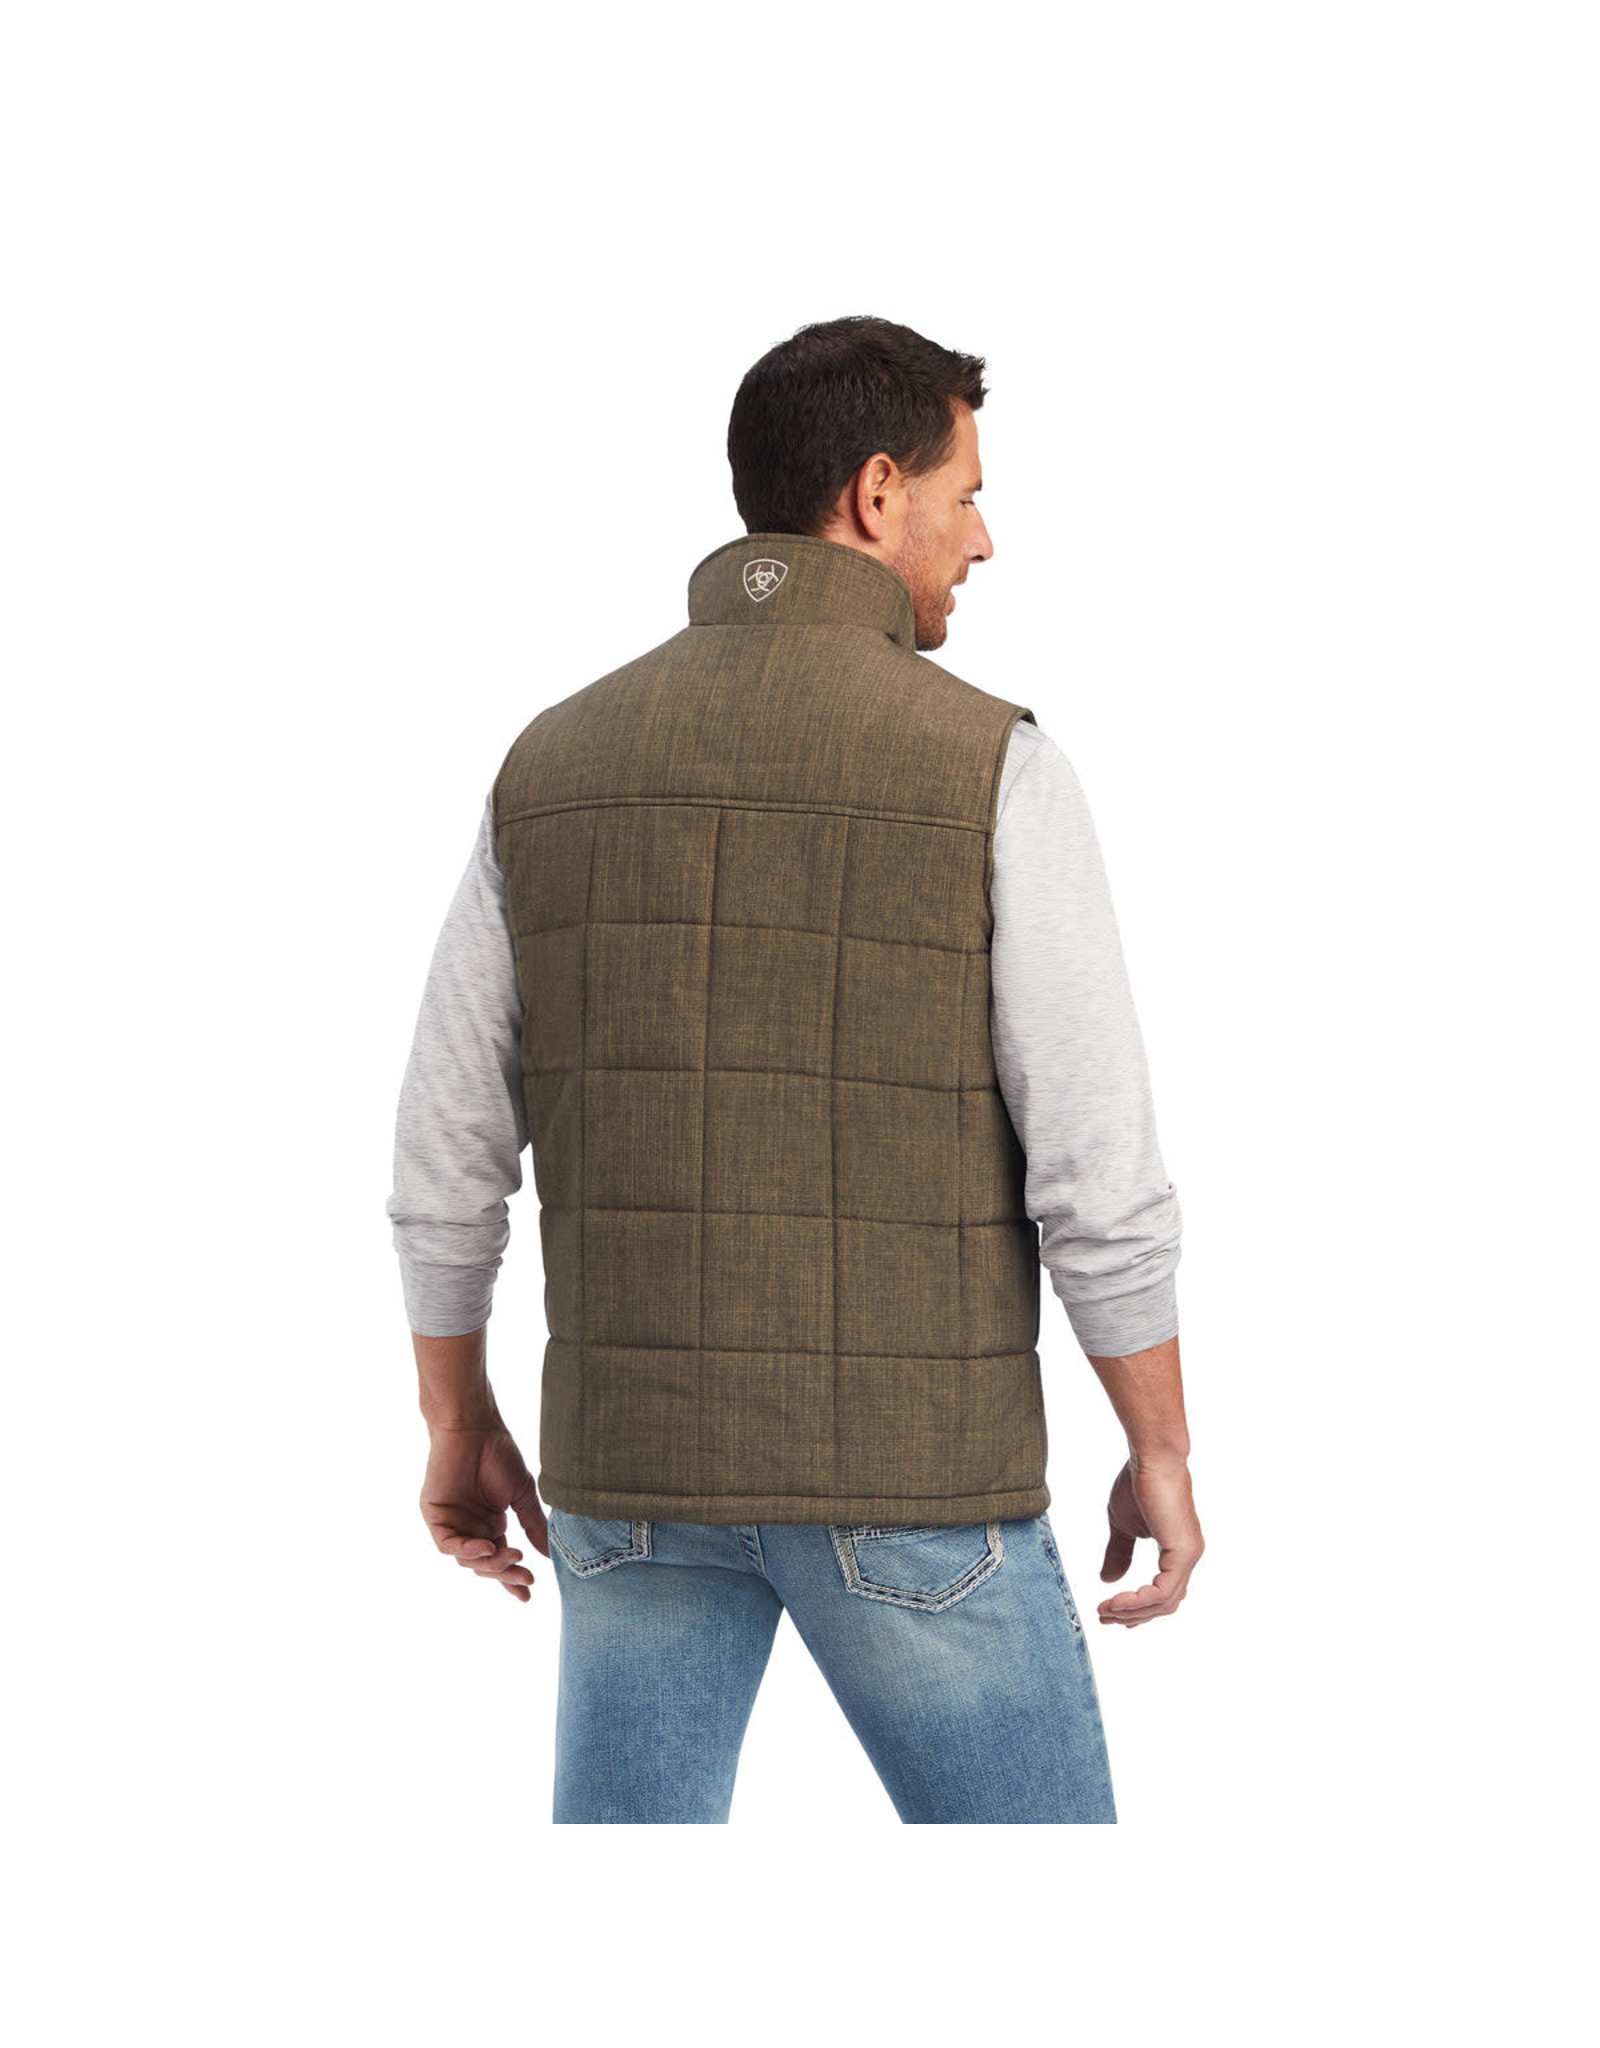 Ariat Ariat Men's Crius Concealed Carry 10041520 Crocodile Insulated Vest